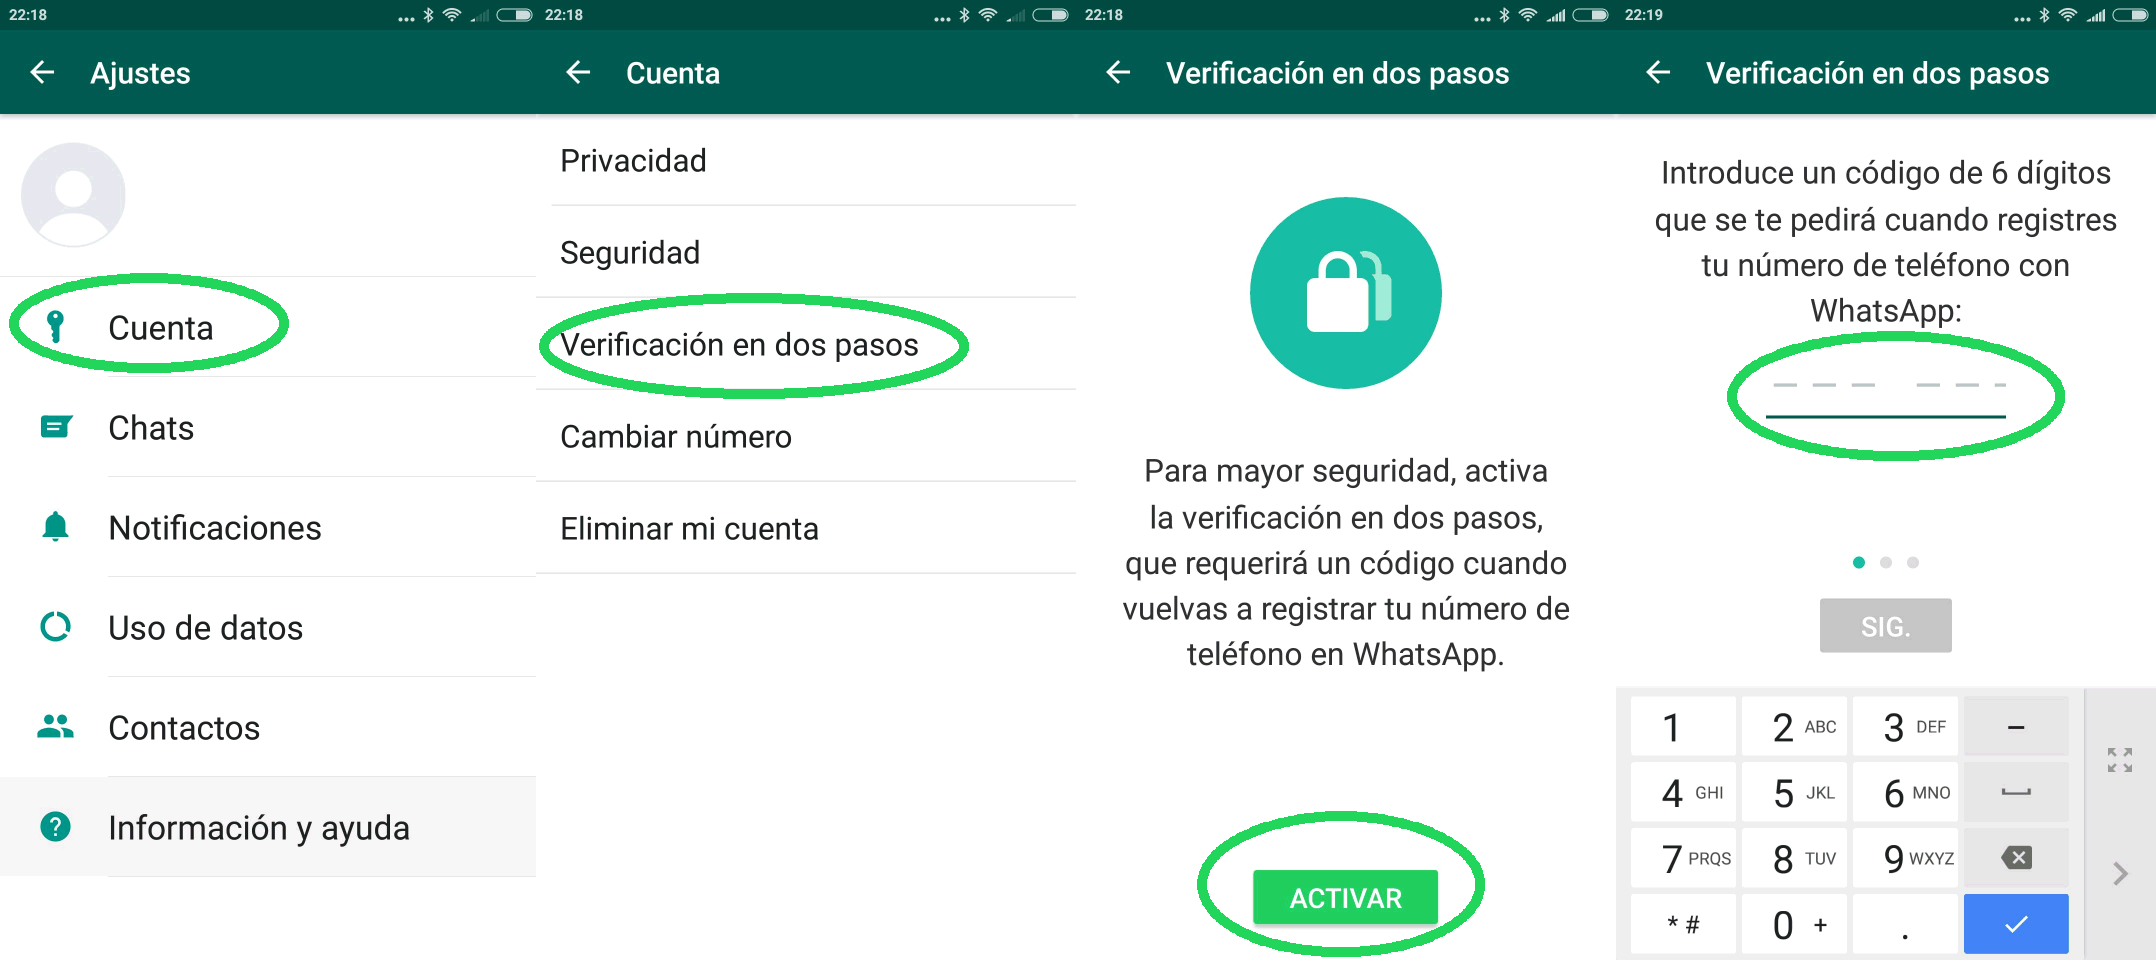 WhatsApp: Cómo activar la verificación en dos pasos en iPhone y Android